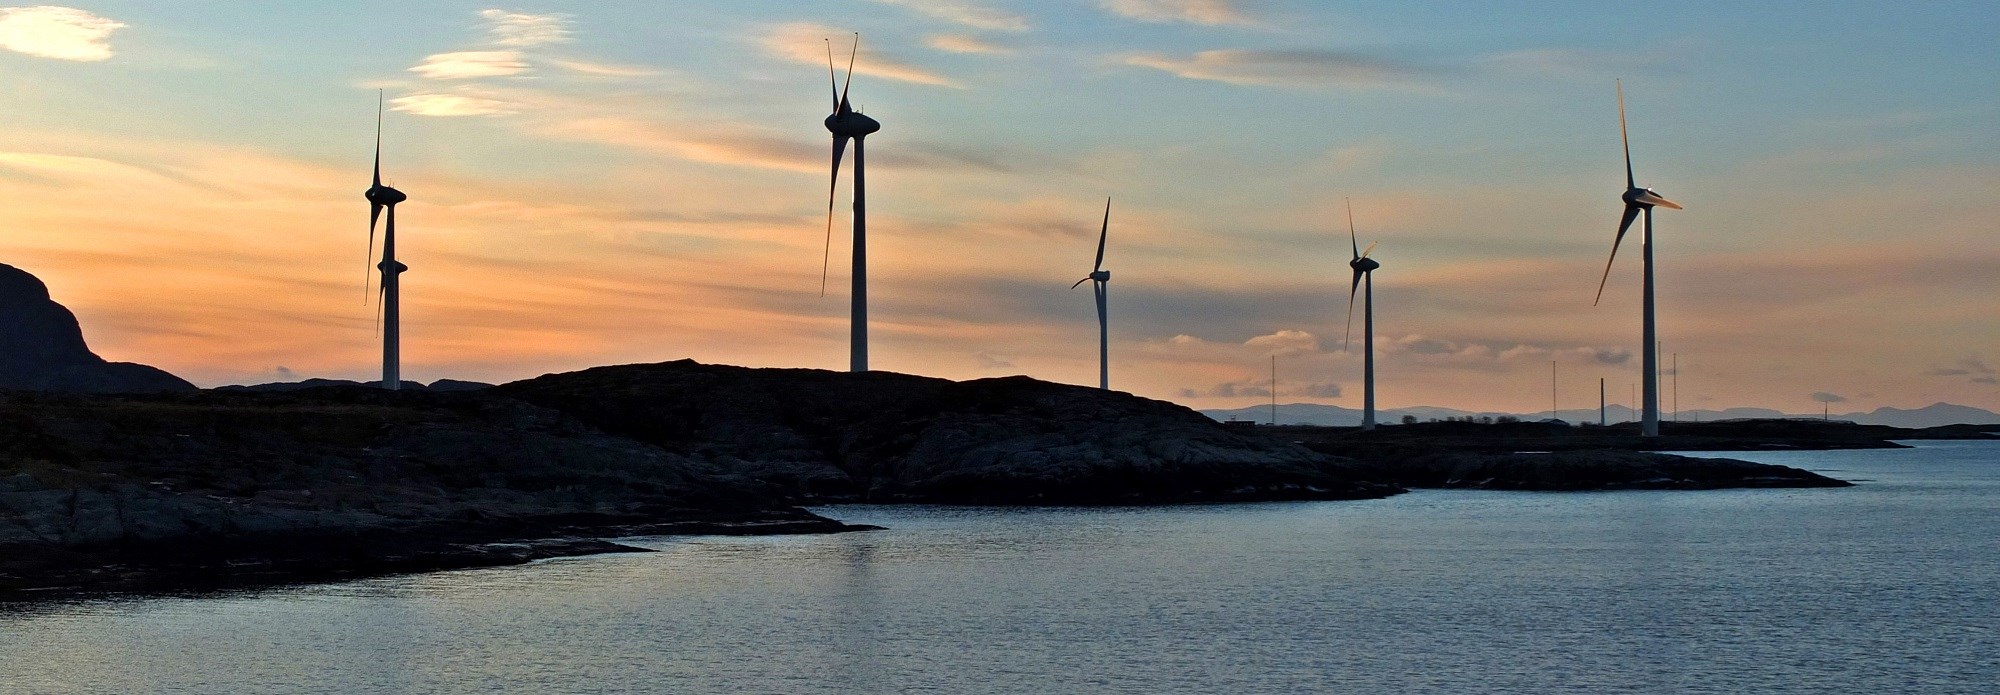 valsneset vindmøllepark, wikimedia